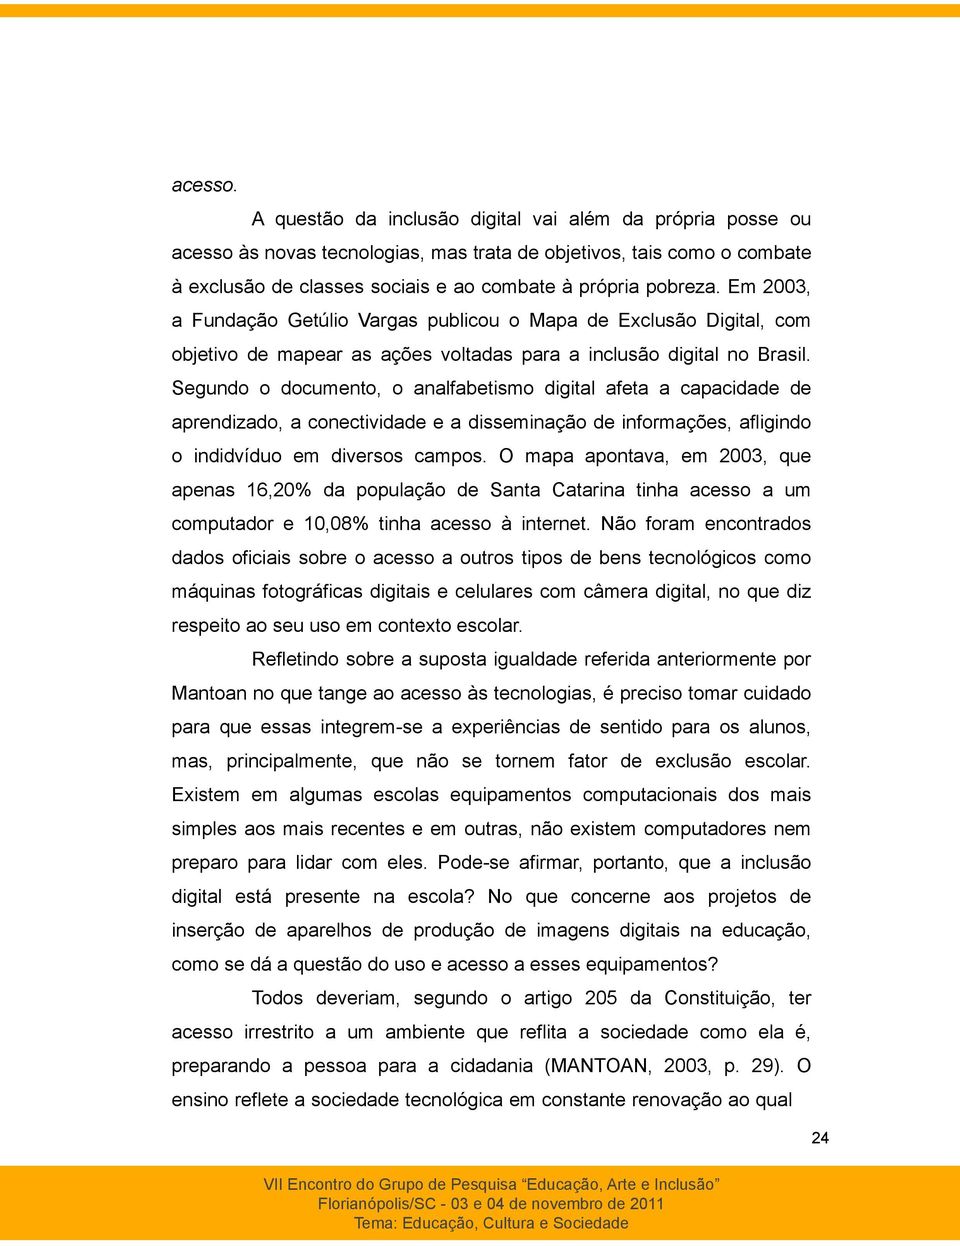 Em 2003, a Fundação Getúlio Vargas publicou o Mapa de Exclusão Digital, com objetivo de mapear as ações voltadas para a inclusão digital no Brasil.